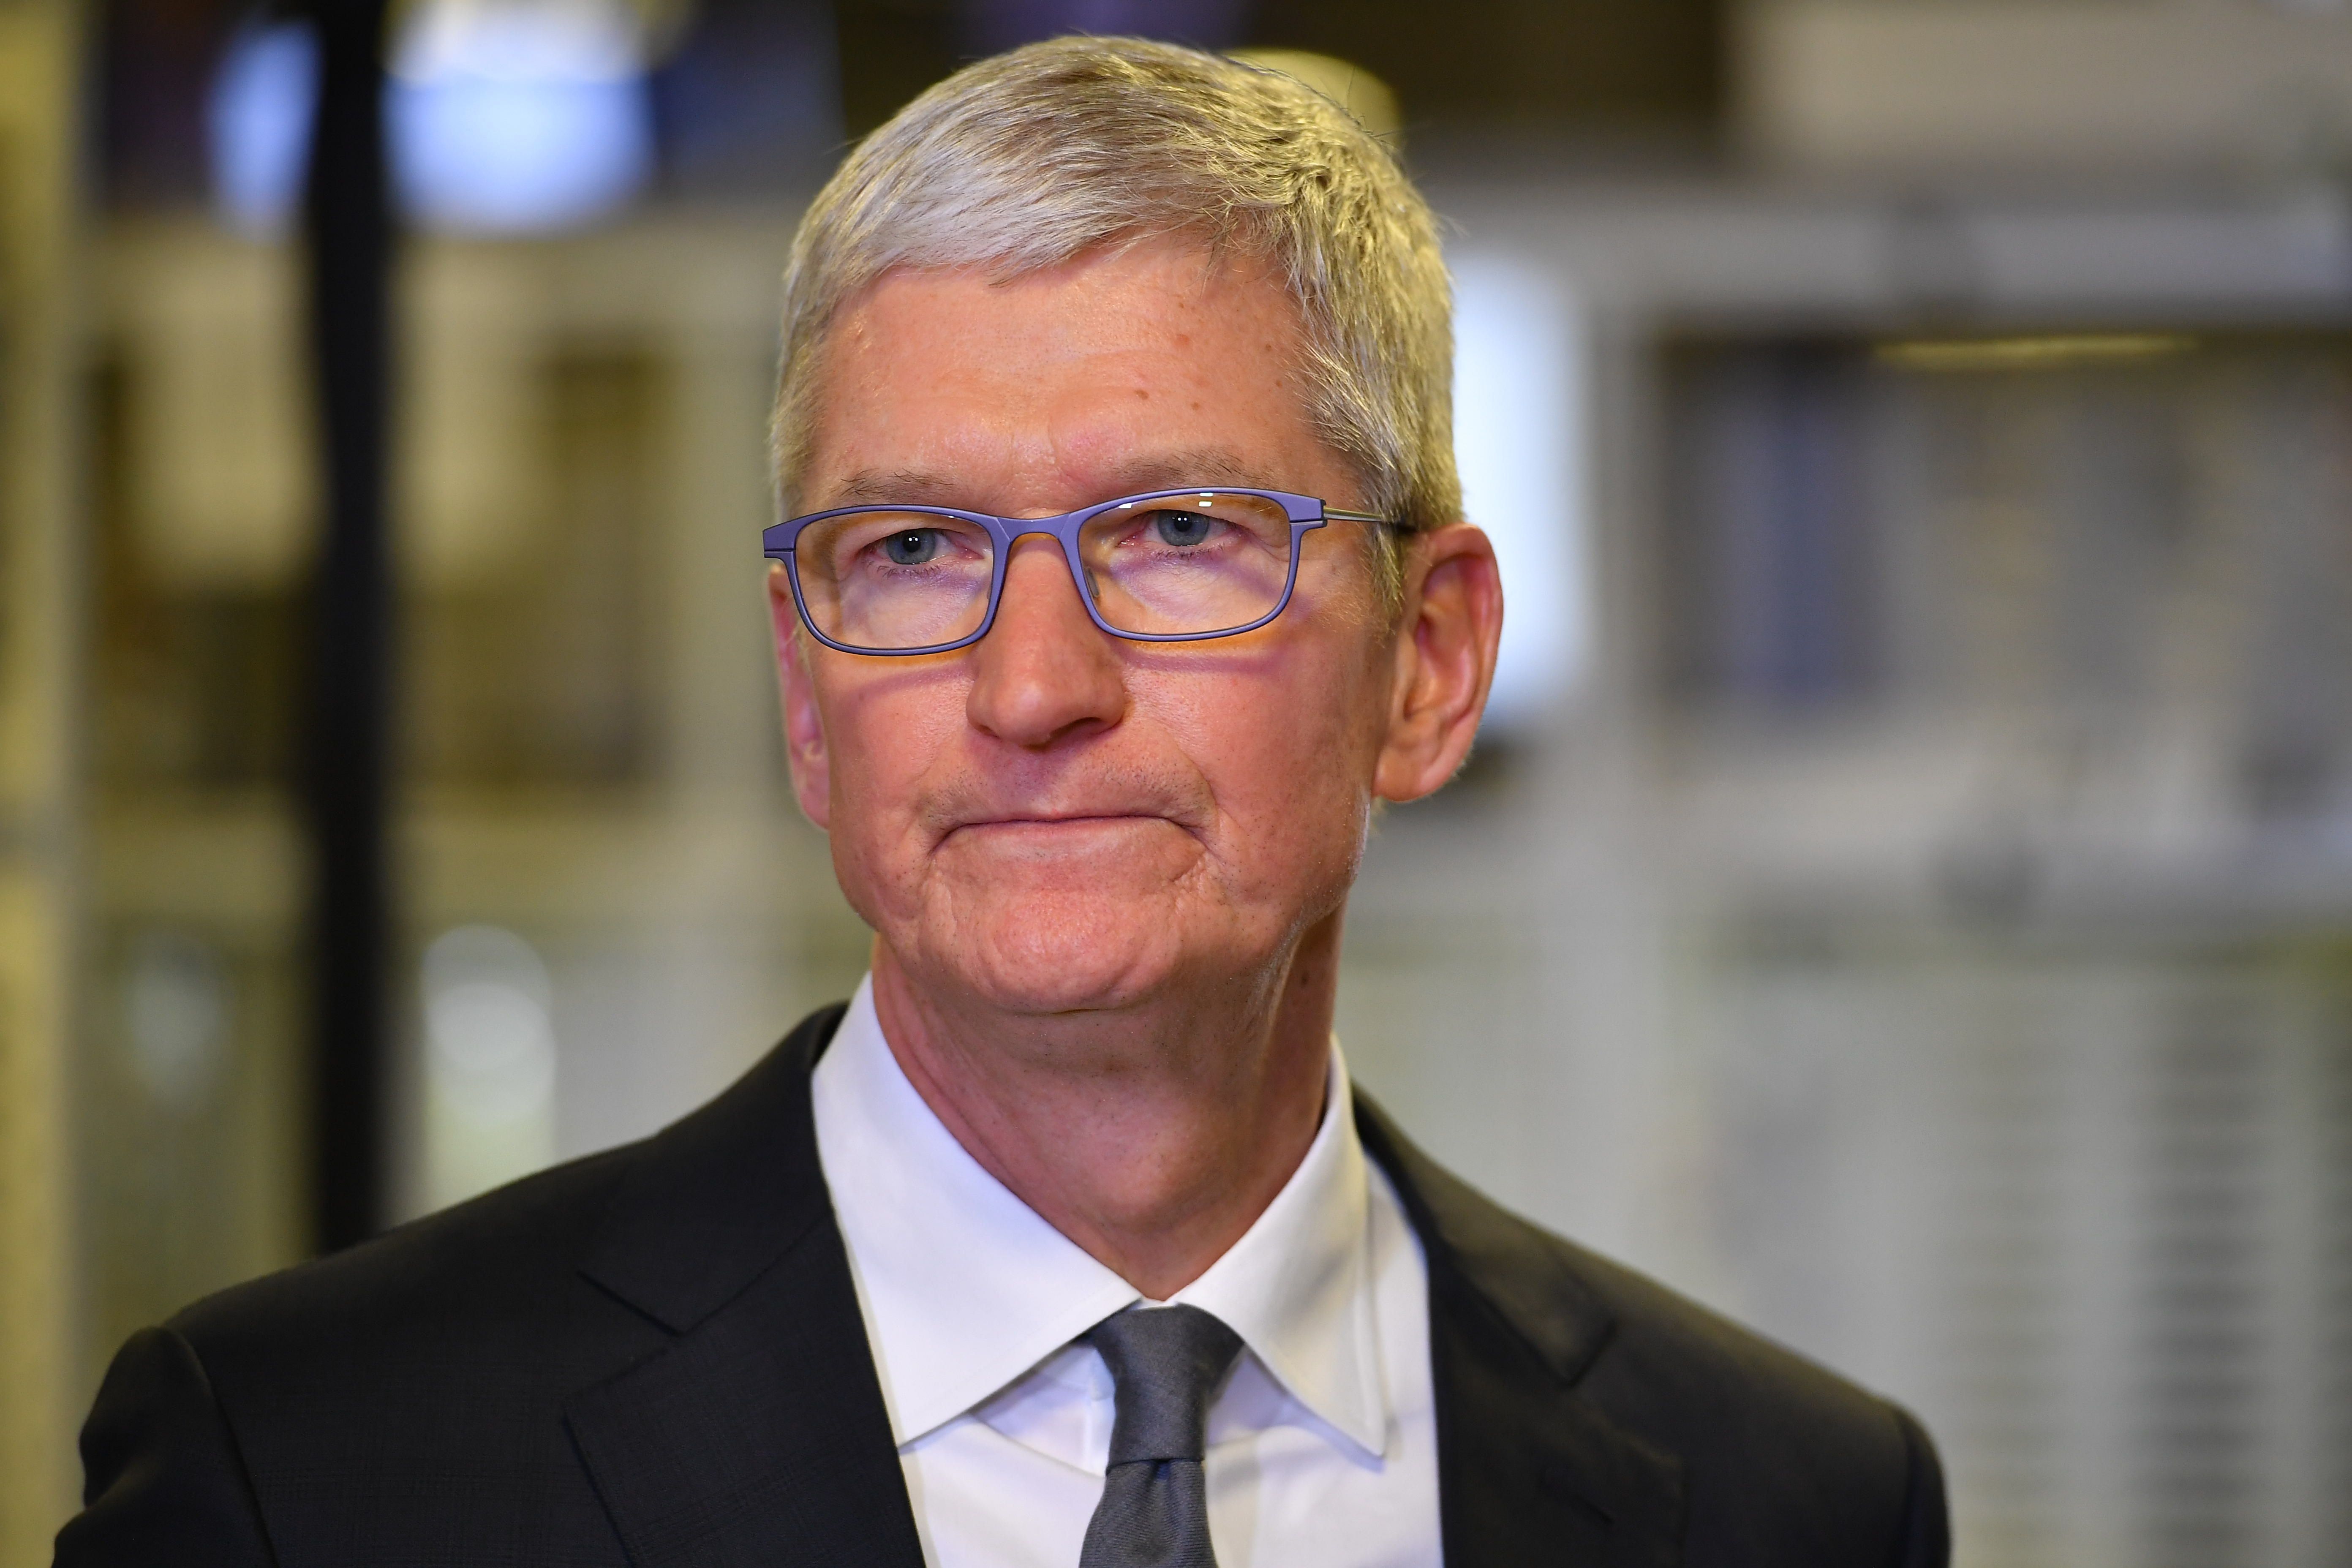  Apple  CEO Tim Cook (ảnh); Apple nói rằng việc tạo ra một 'cửa hậu' để bảo mật của họ có thể được khai thác